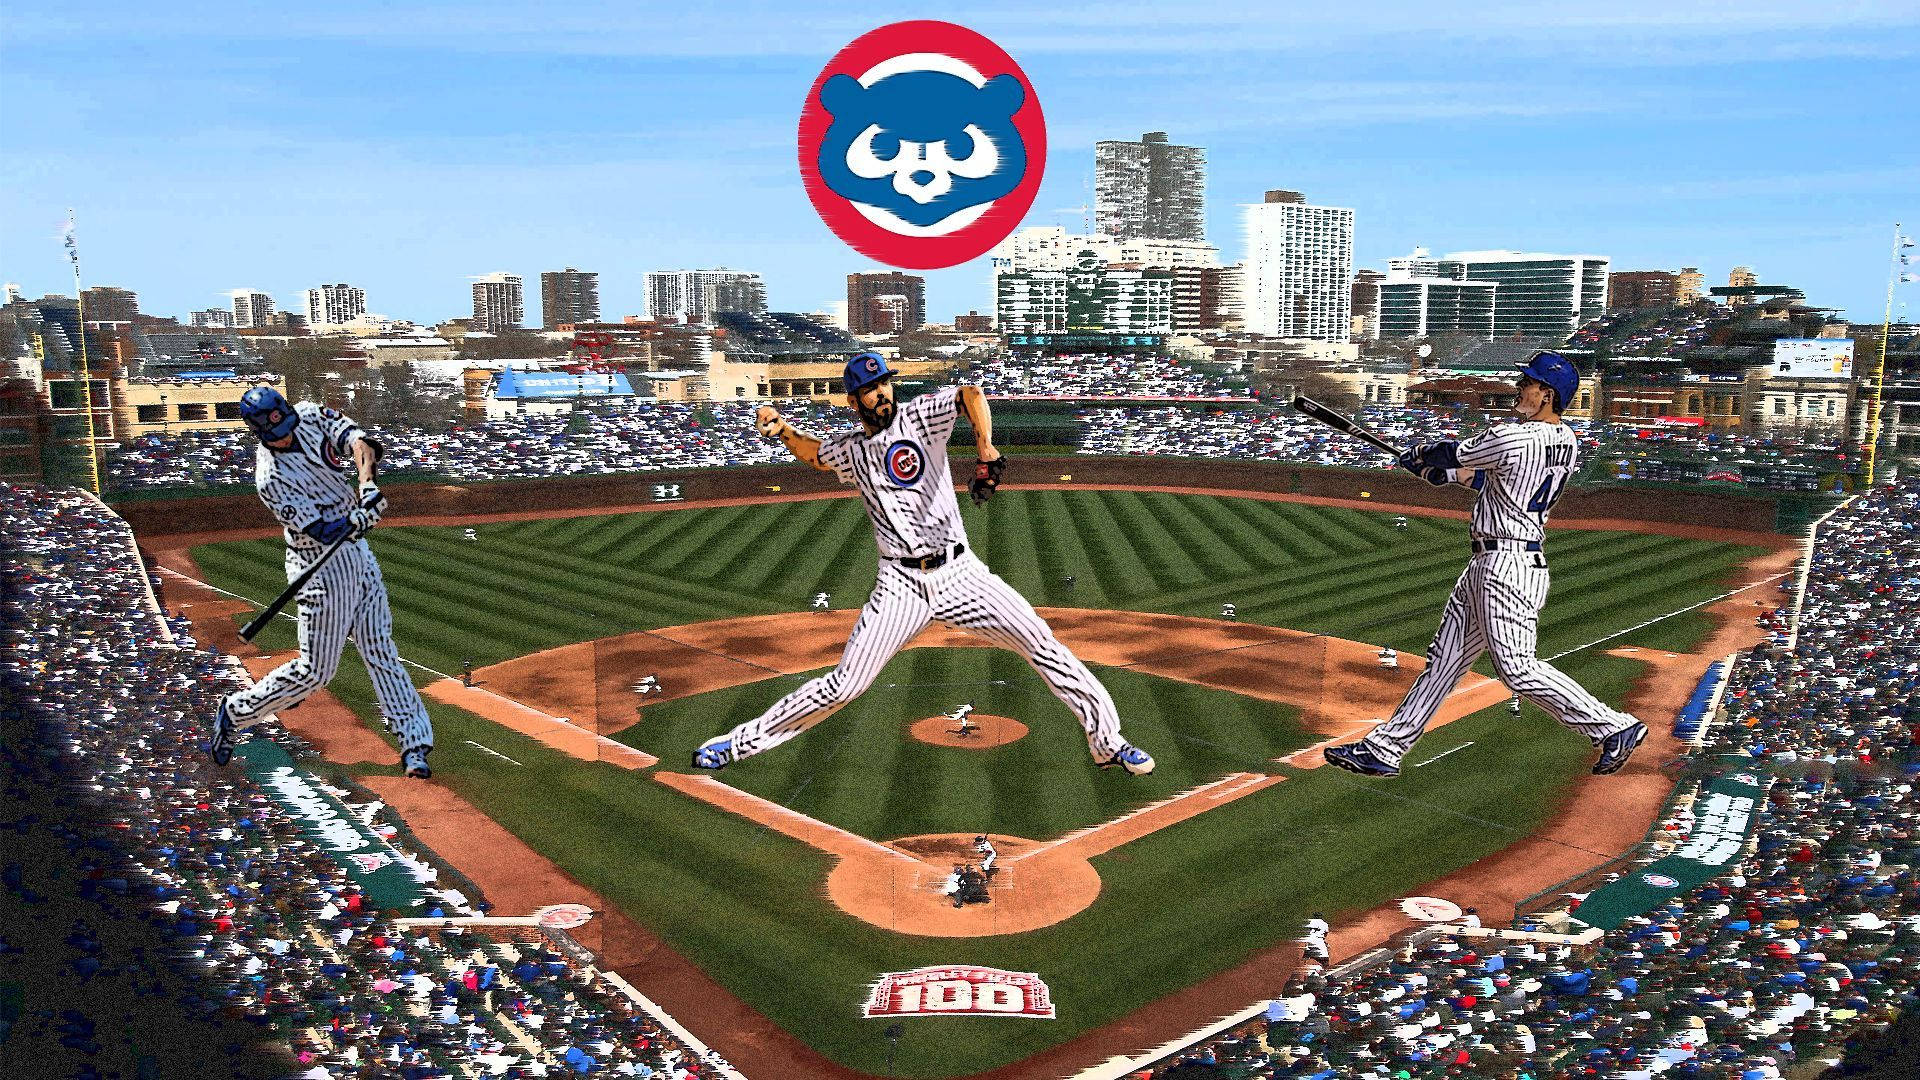 Chicago Cubs Bilder